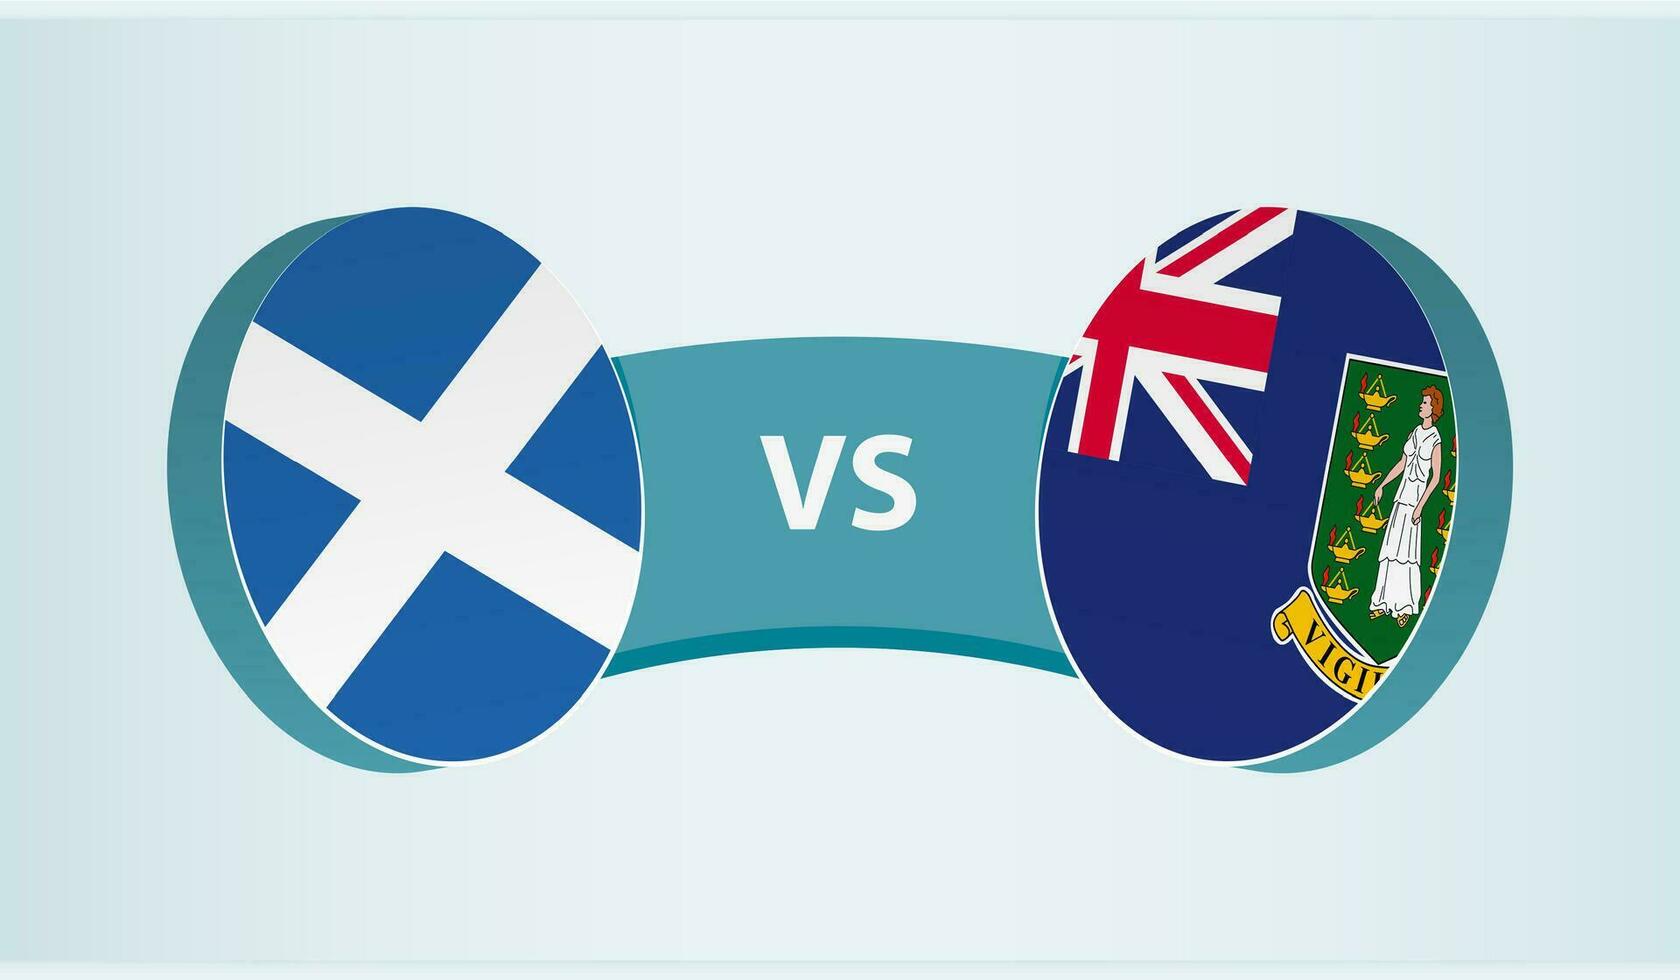 Schotland versus Brits maagd eilanden, team sport- wedstrijd concept. vector